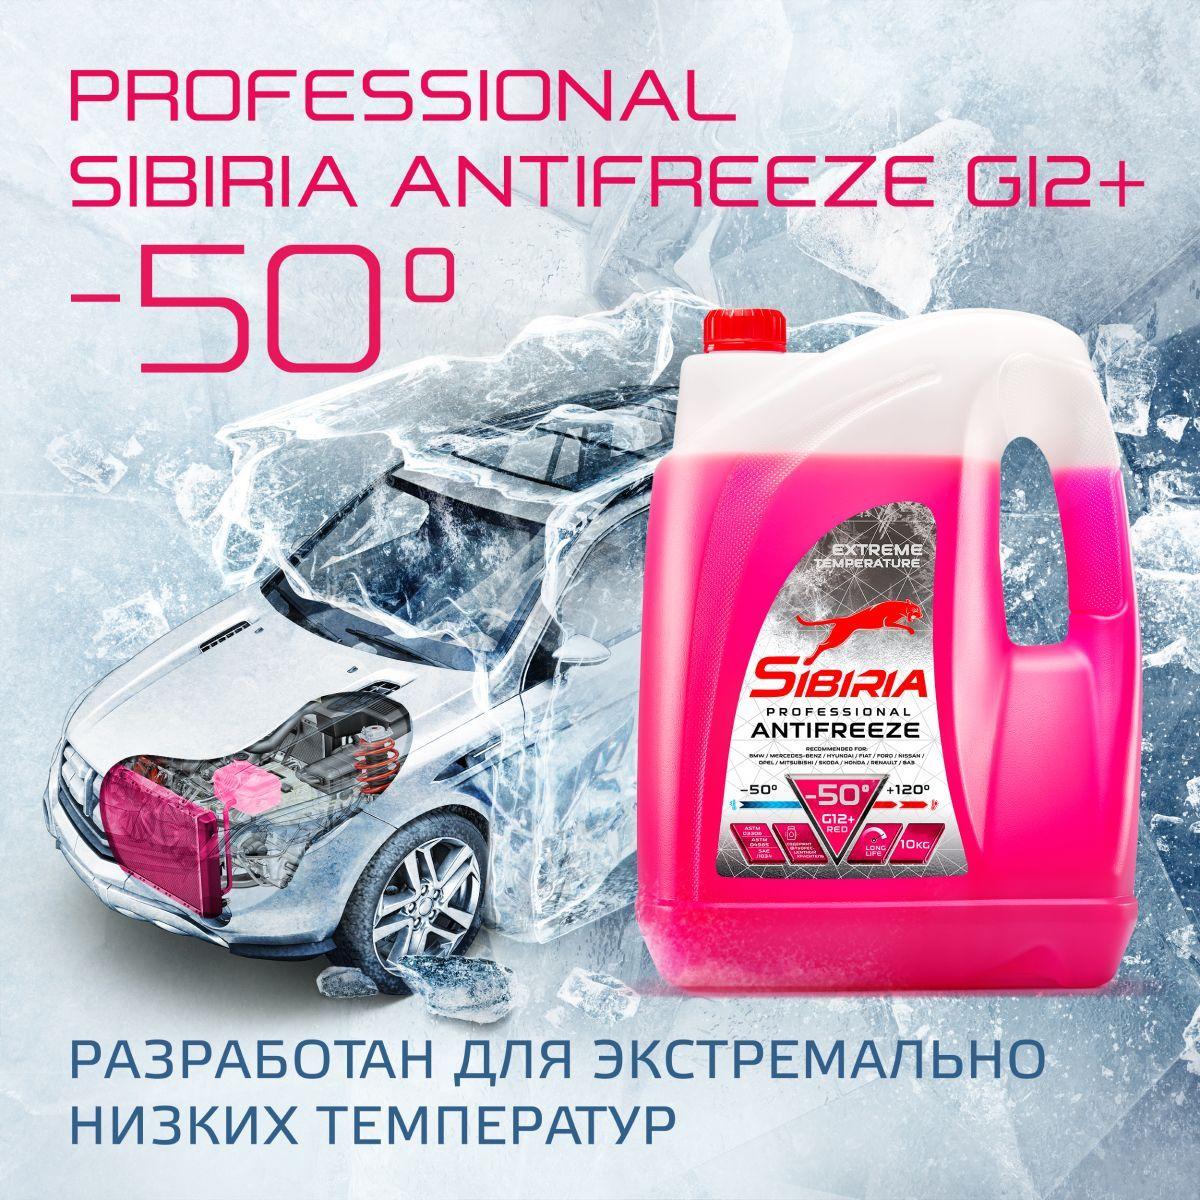 Антифриз для двигателя автомобиля SIBIRIA ANTIFREEZE G12+ (-50), охлаждающая жидкость Сибирия в авто, от -50С до +120С, карбоксилатный красный G12+ 10 кг, готовый к применению